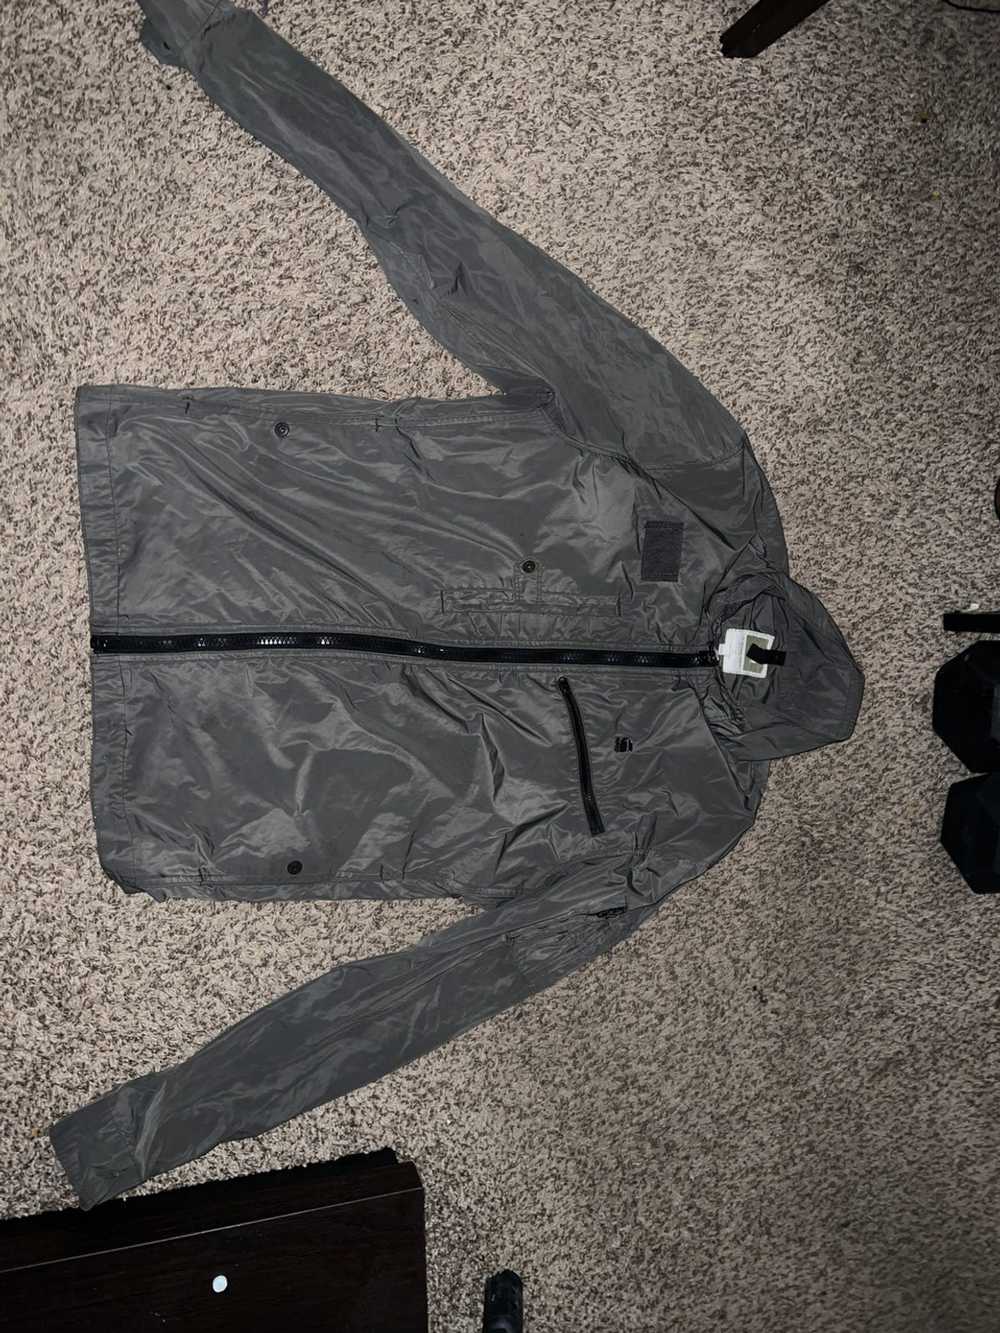 Gstar Gstar lightweight zip up jacket - image 1